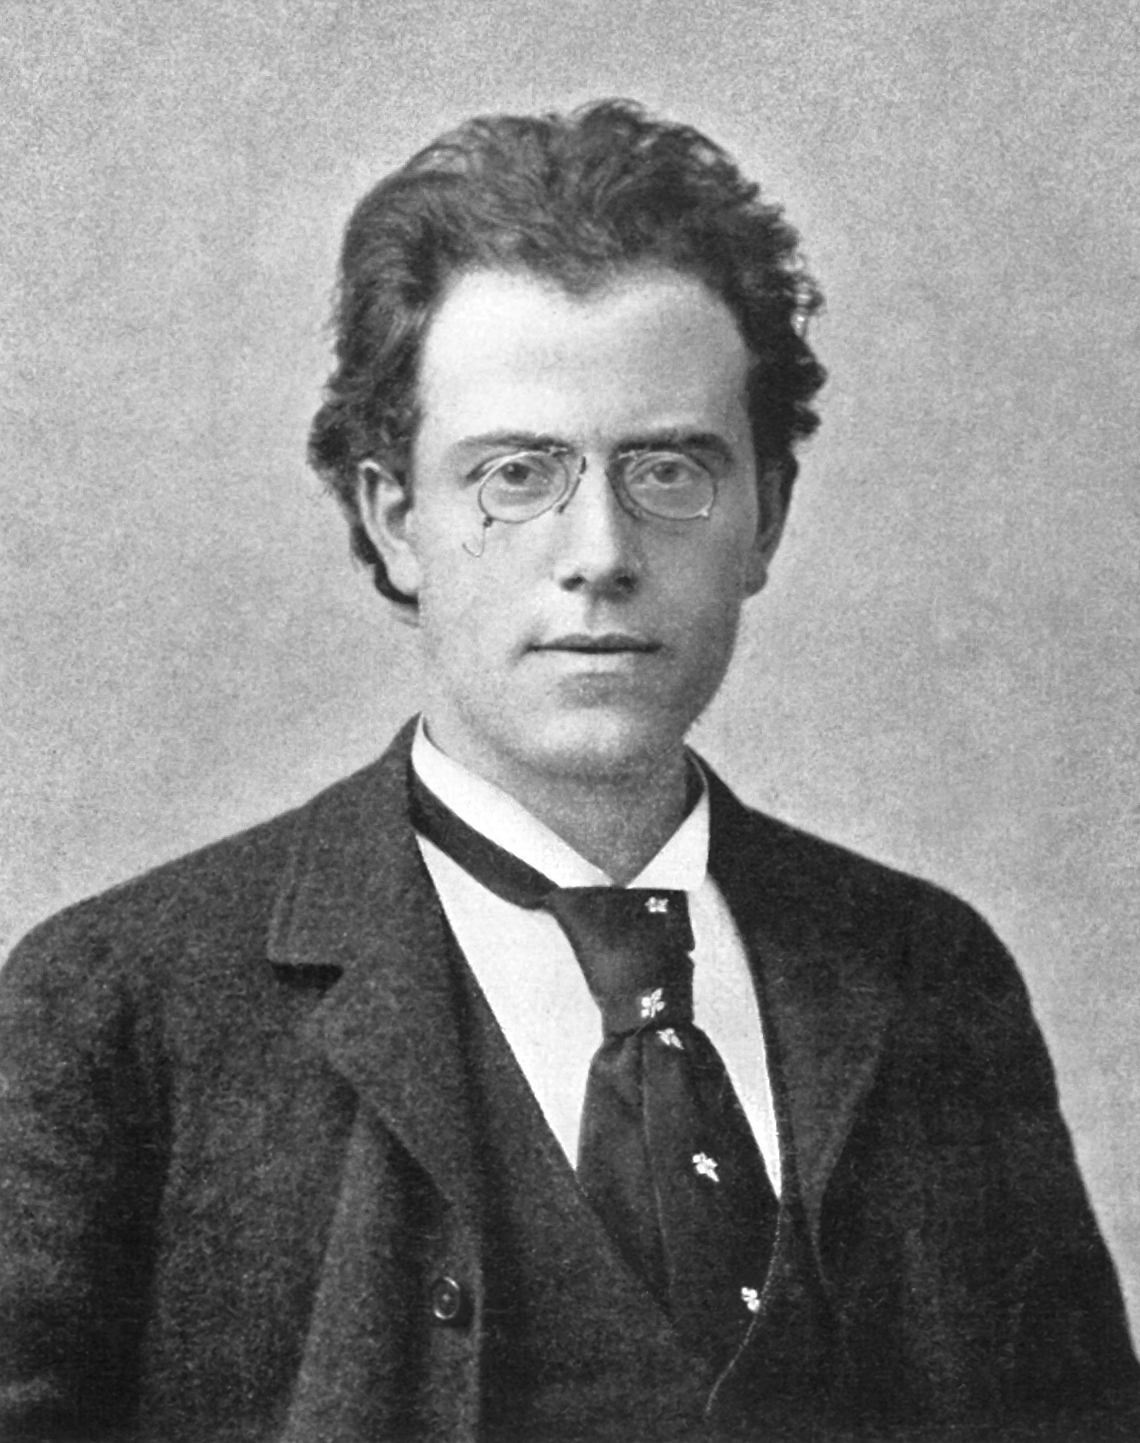 100 klasyków na 100 wieczorów #23: Gustav Mahler-Symfonia 5 w cis moll